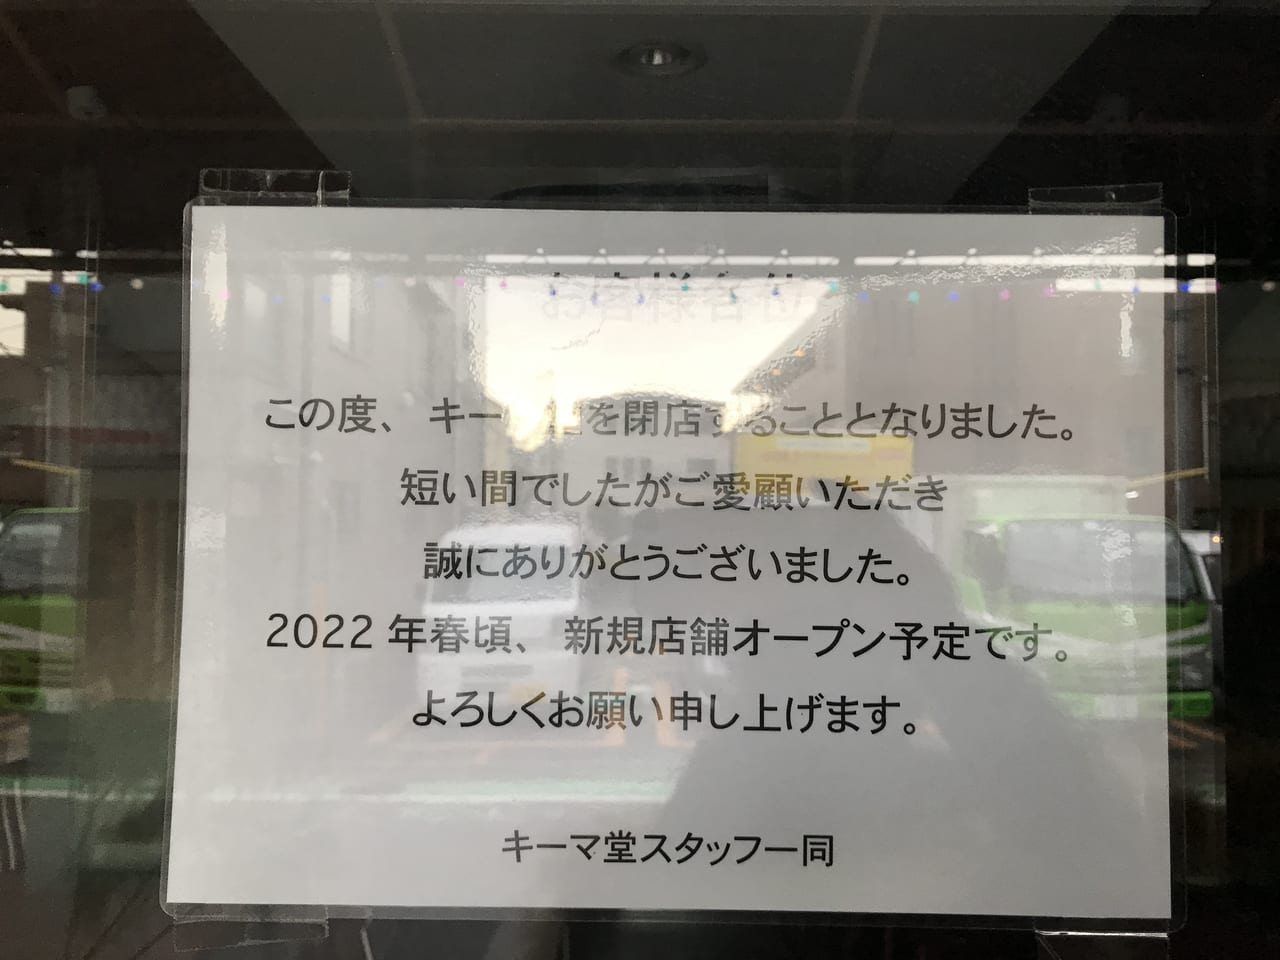 世田谷区二子玉川商店街のグルテンフリーのカレーやさん「キーマ堂」は閉店し、2022年春新規オープン予定です。